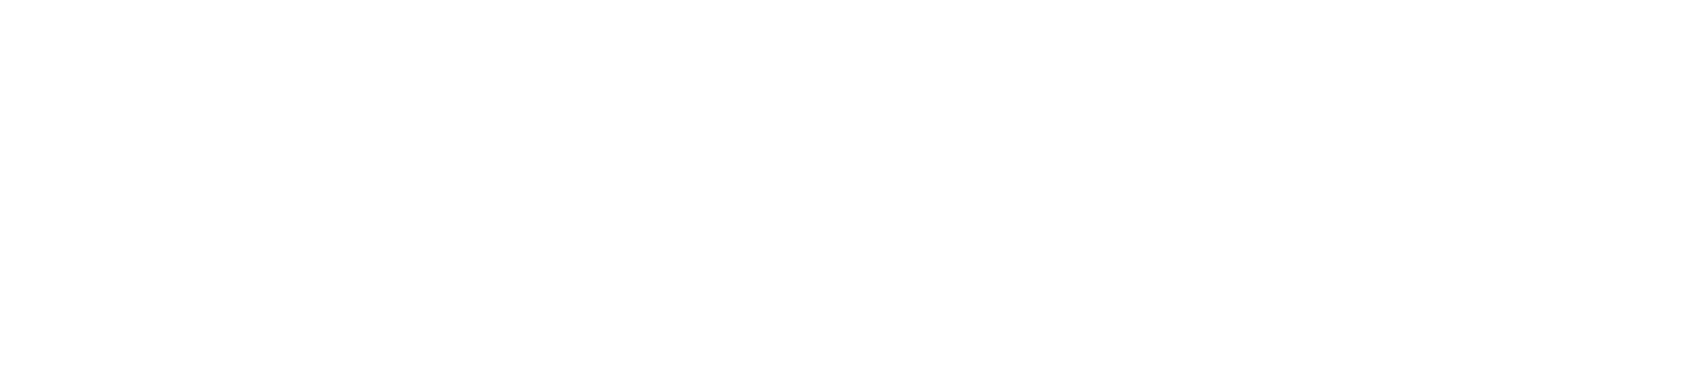 Paradox Interactive Logo groß für dunkle Hintergründe (transparentes PNG)